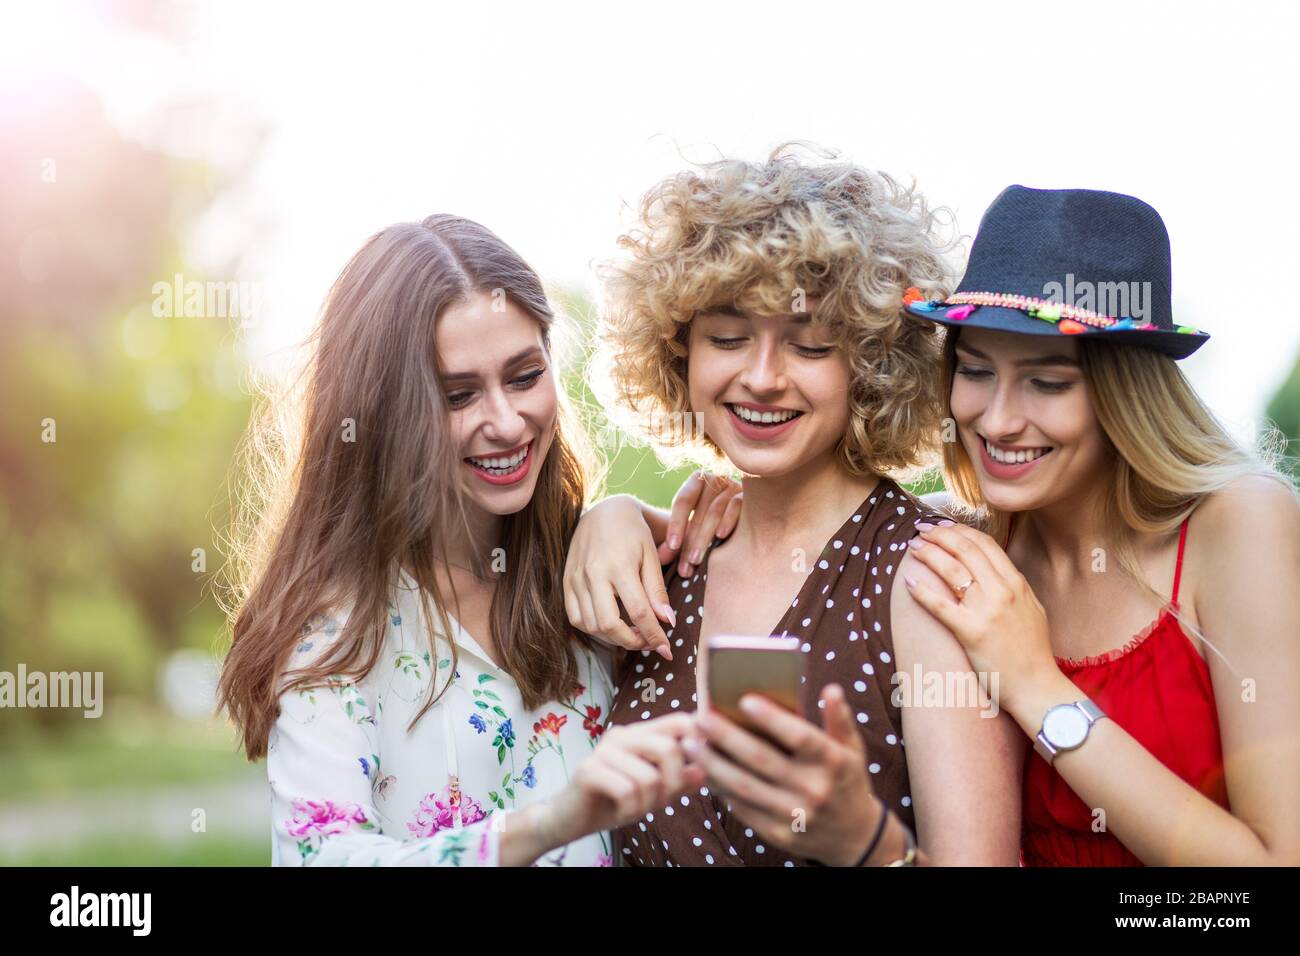 Trois jeunes femmes heureuses qui s'amusent avec un smartphone Banque D'Images